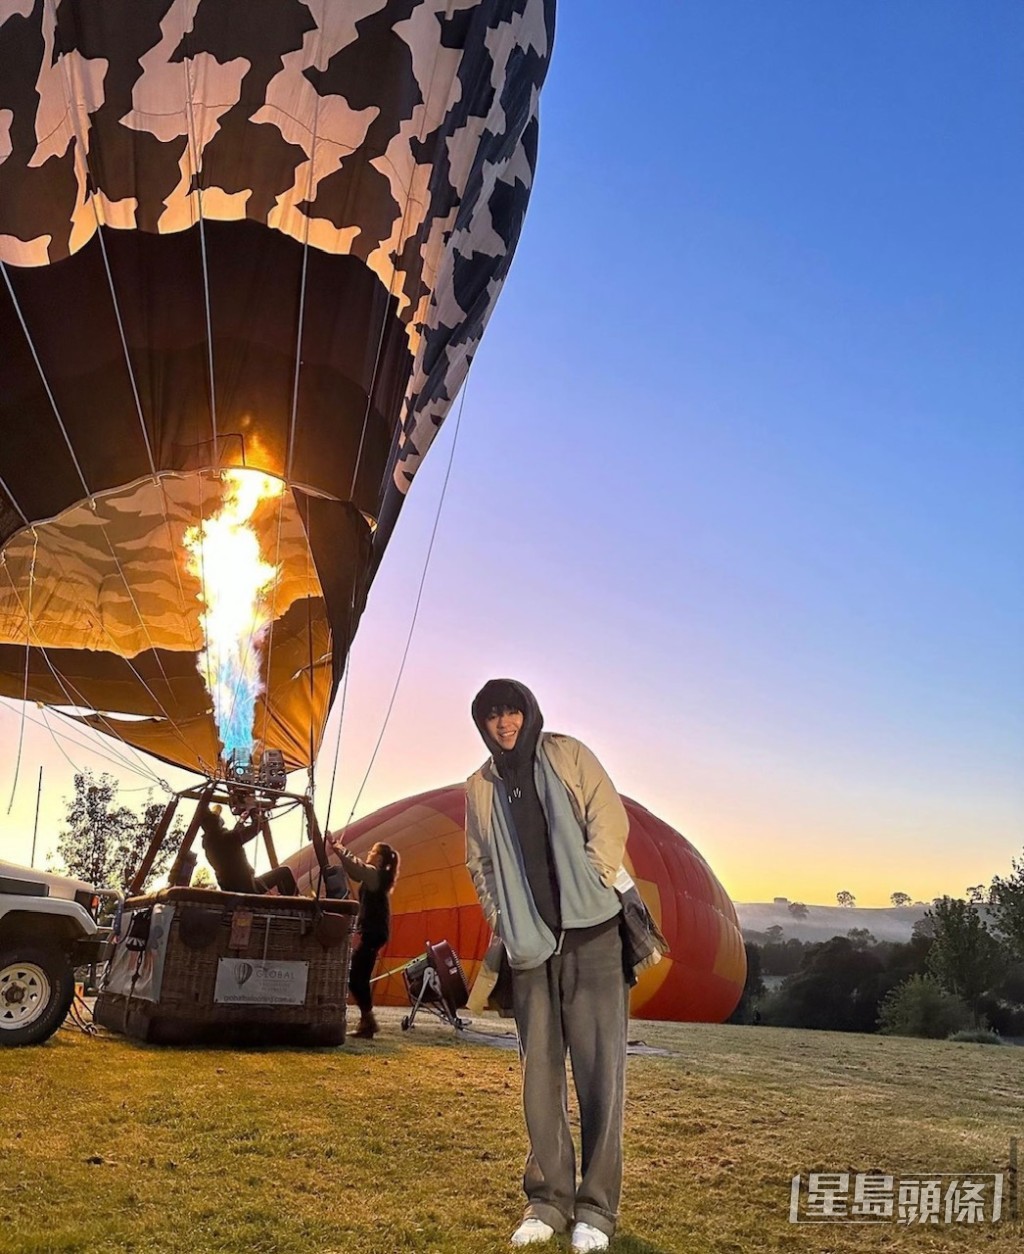 遠走澳洲拍團綜，可惜陳卓賢未能一嘗坐熱氣球的心願。